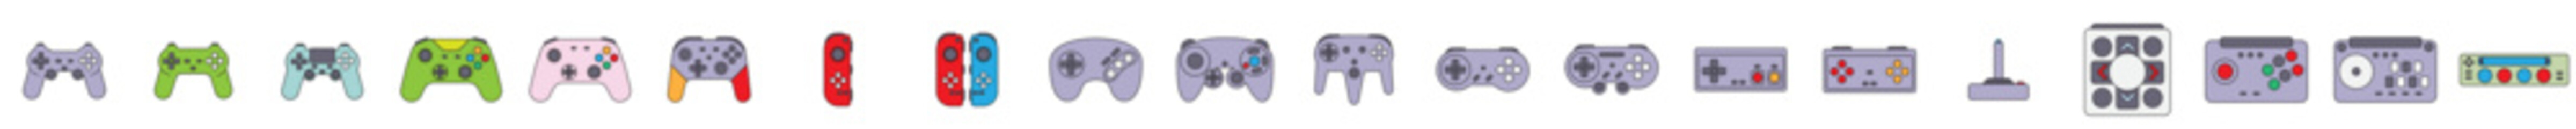 Game Controller Icon Set